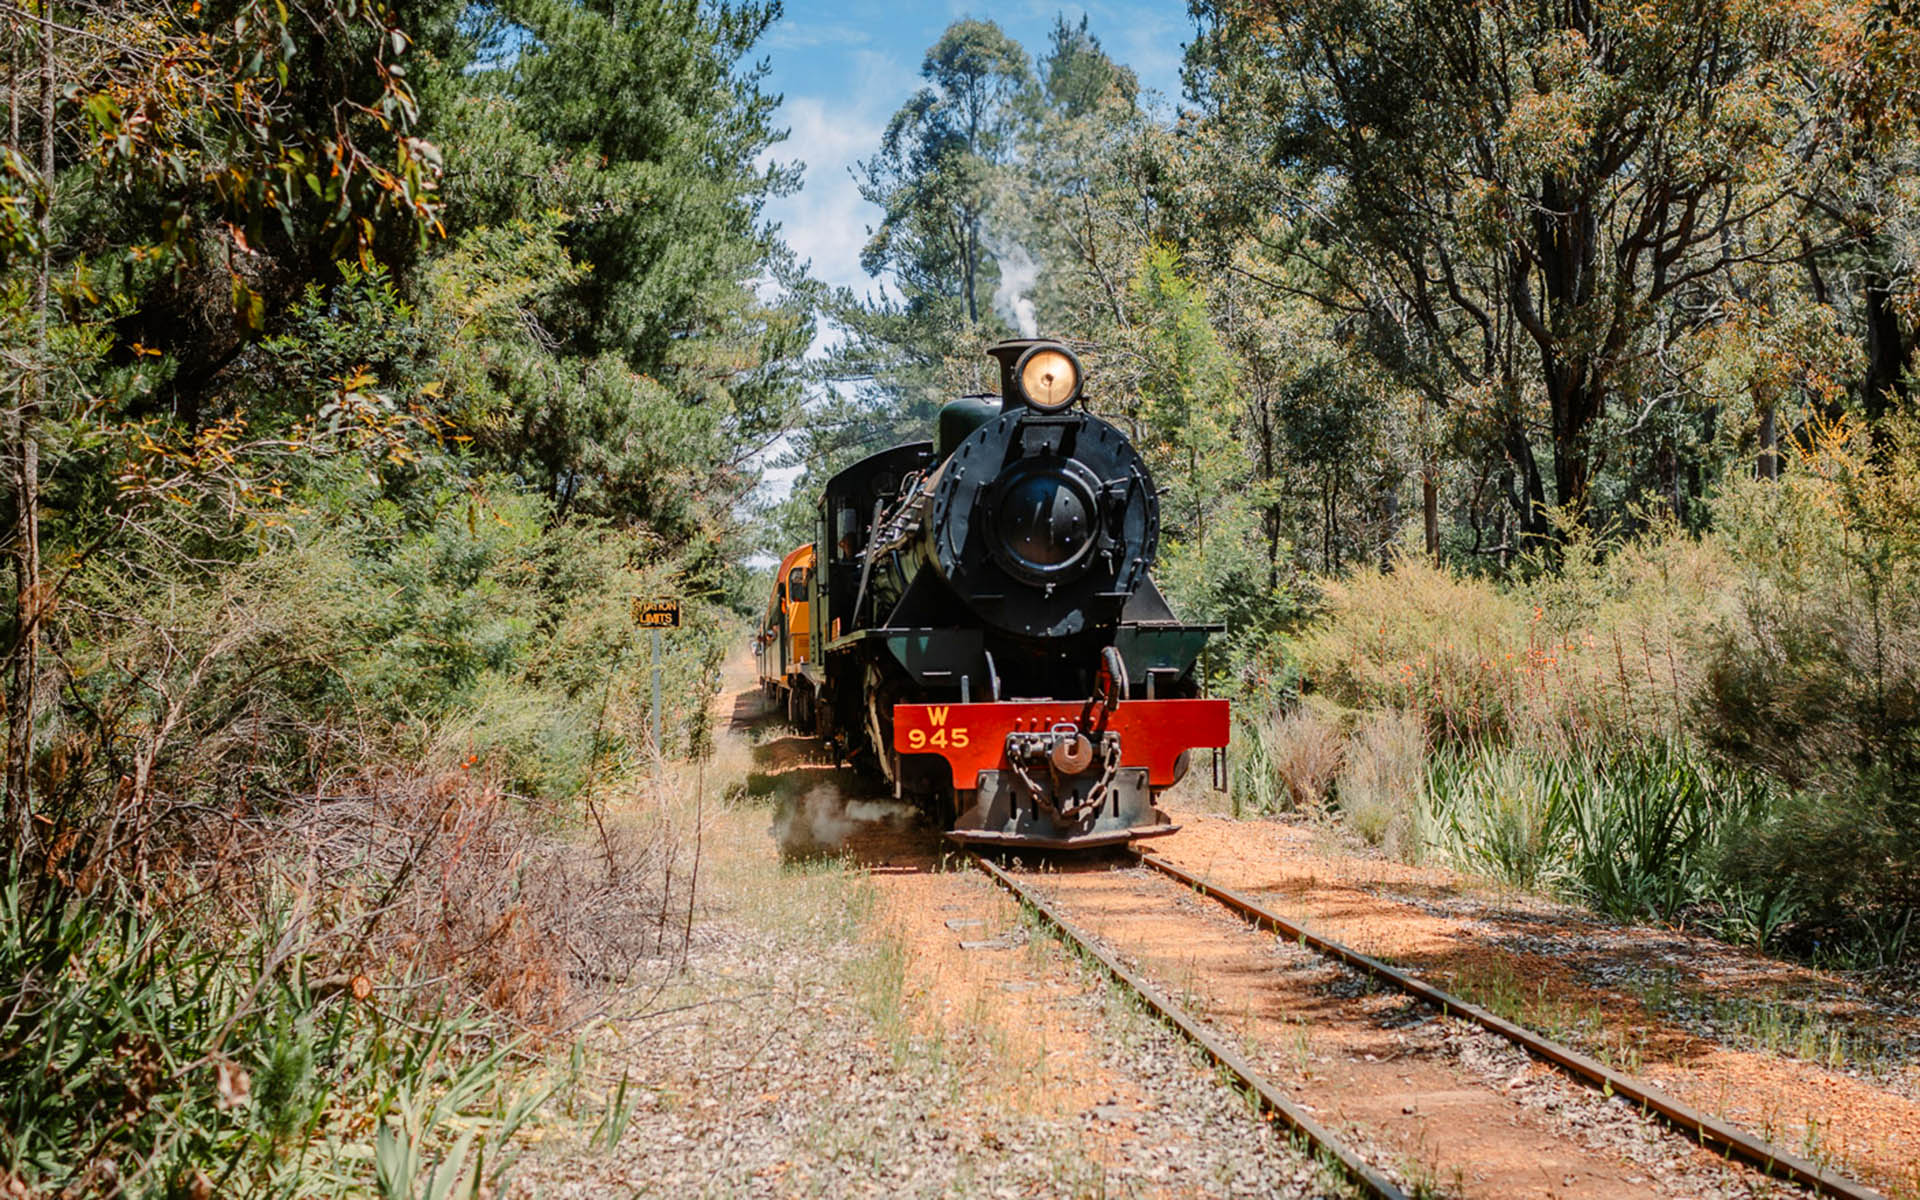 Hotham Valley tourist Railway Steam Train in Dwellingup